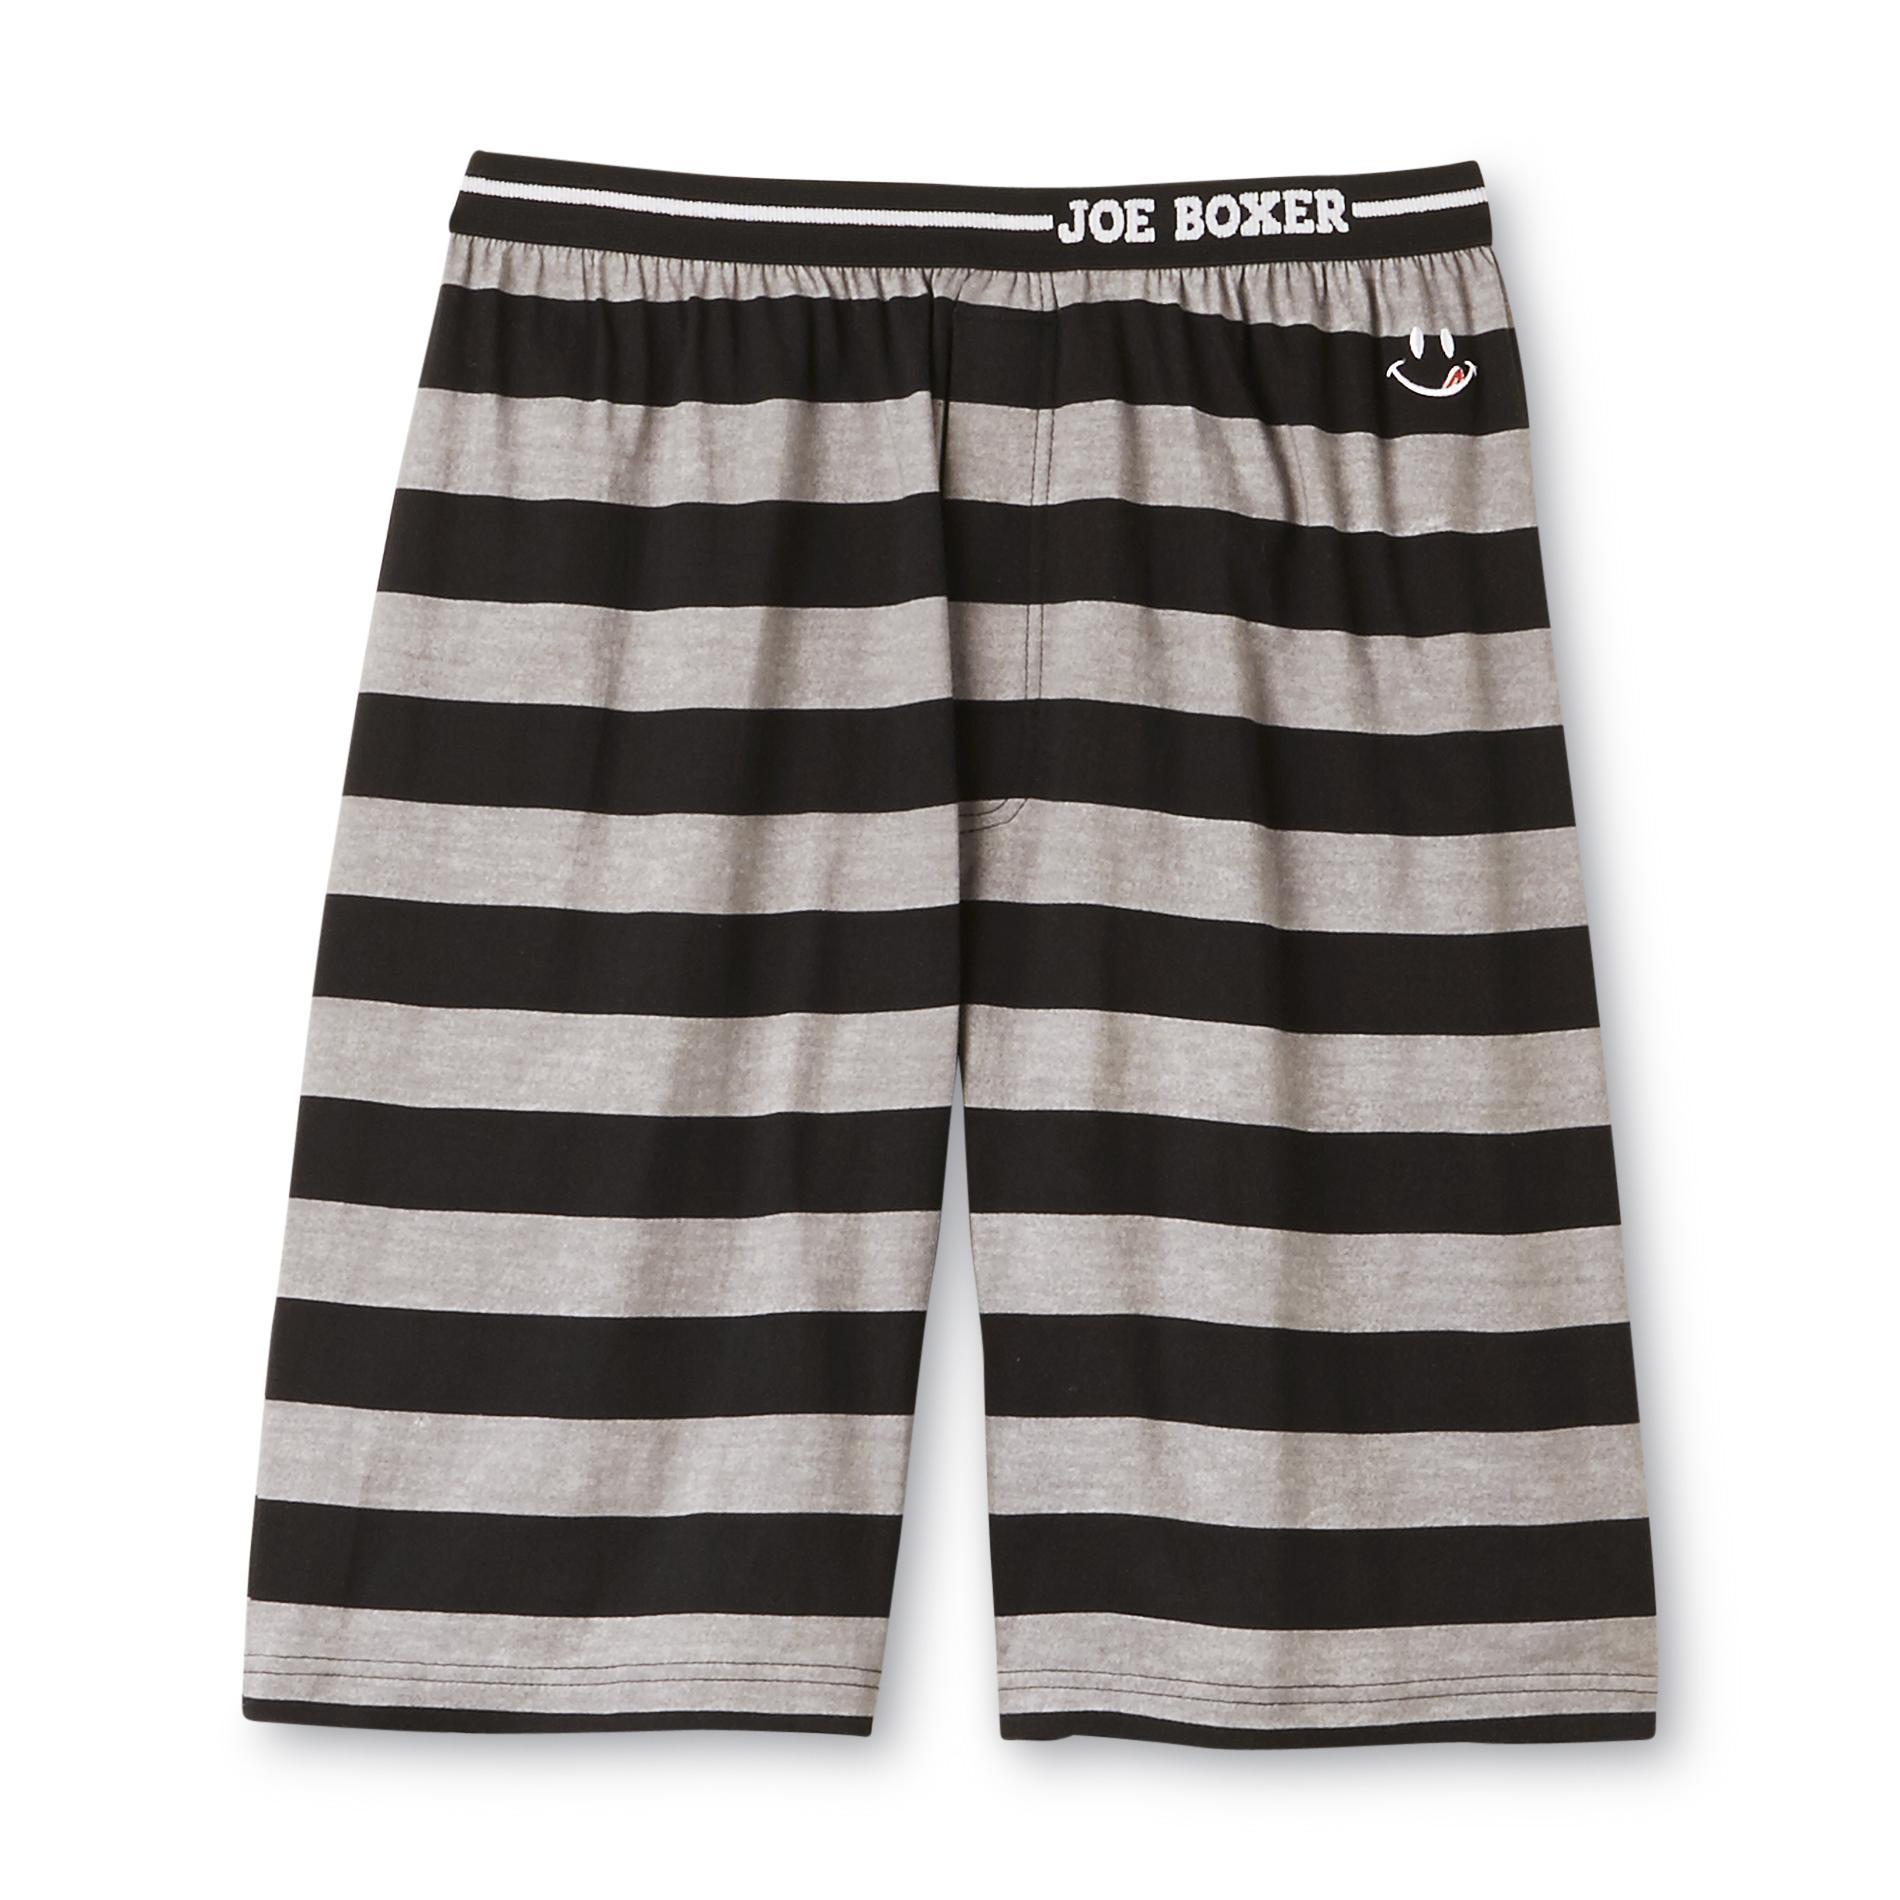 Joe Boxer Men's Jam Shorts - Striped